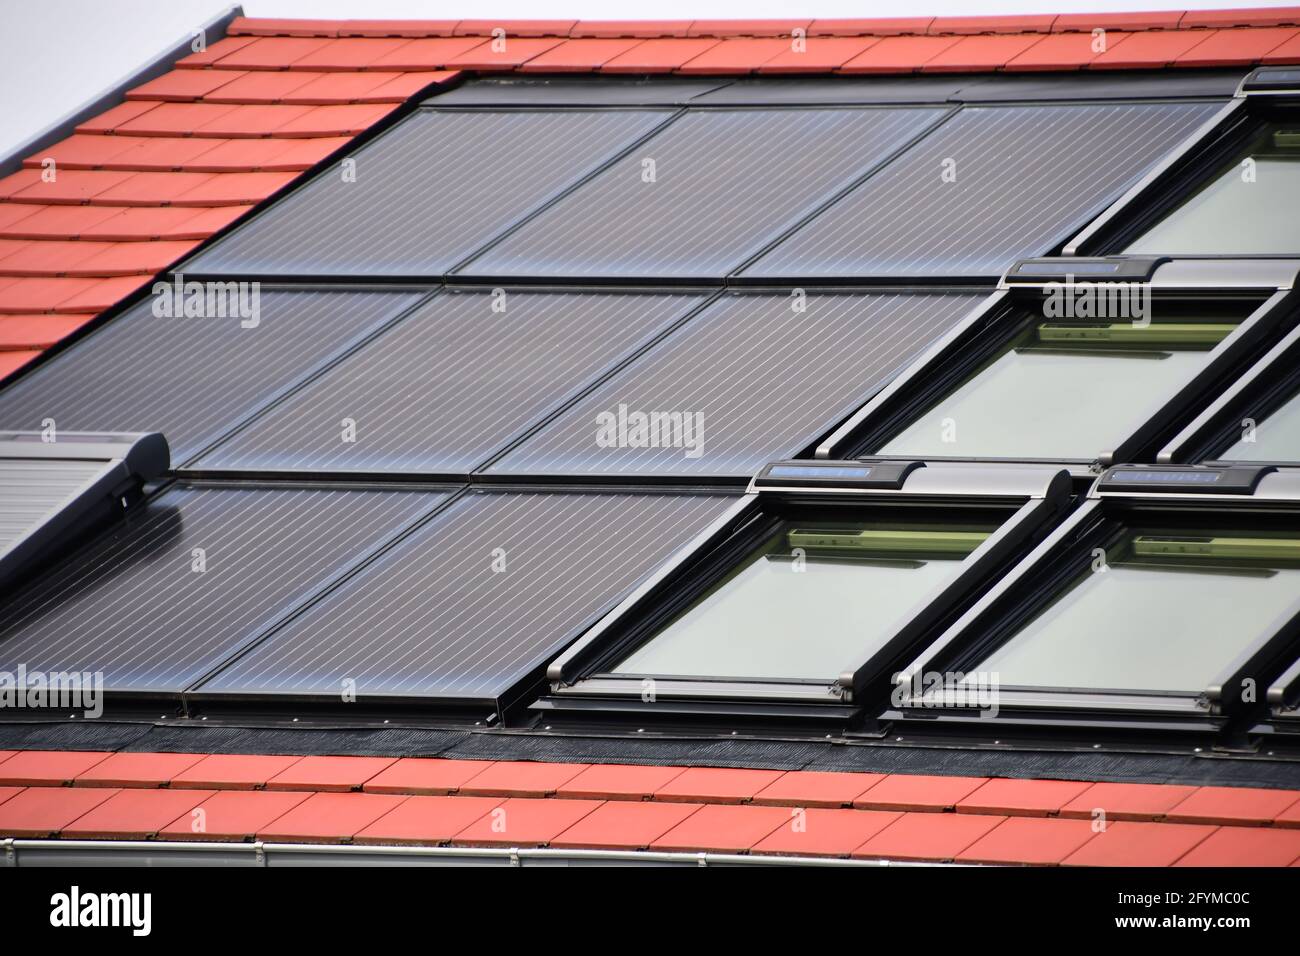 Solarmodule zur Stromerzeugung aus Sonnenlicht, integriert in das Dach eines Einfamilienhauses vor dem Himmel Stockfoto